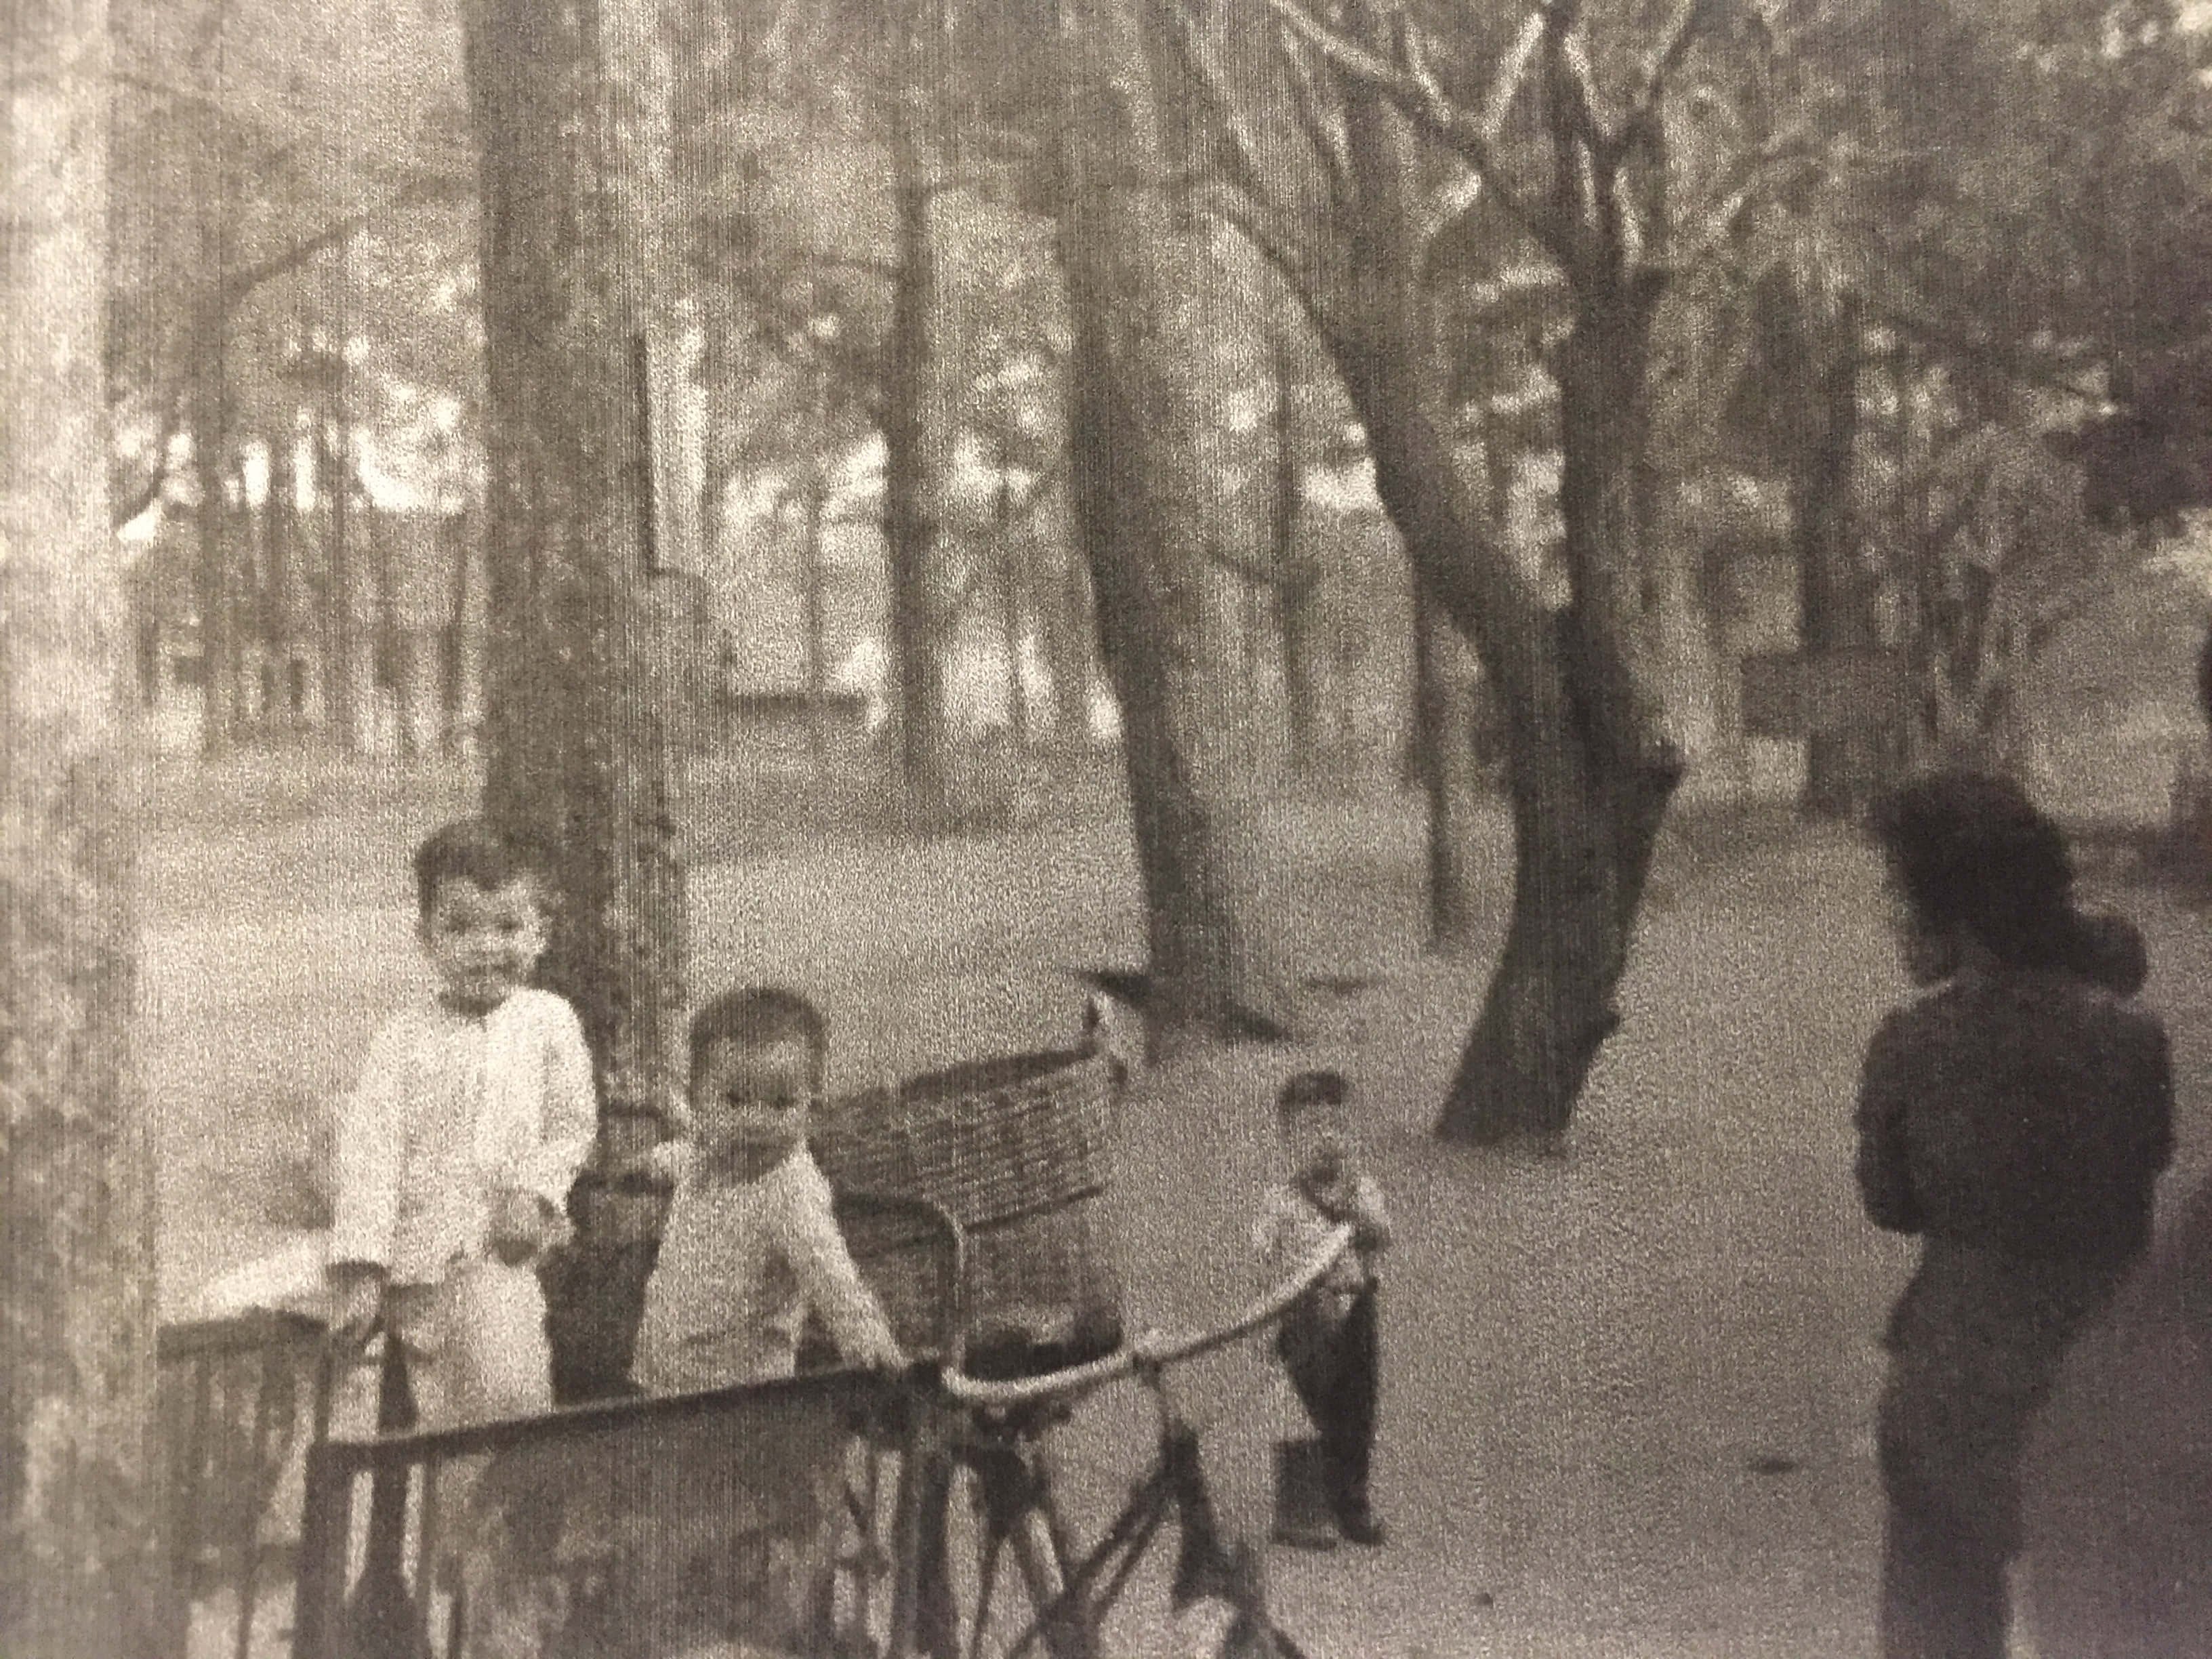 Kids hanging out near bicycles and rickshaws.